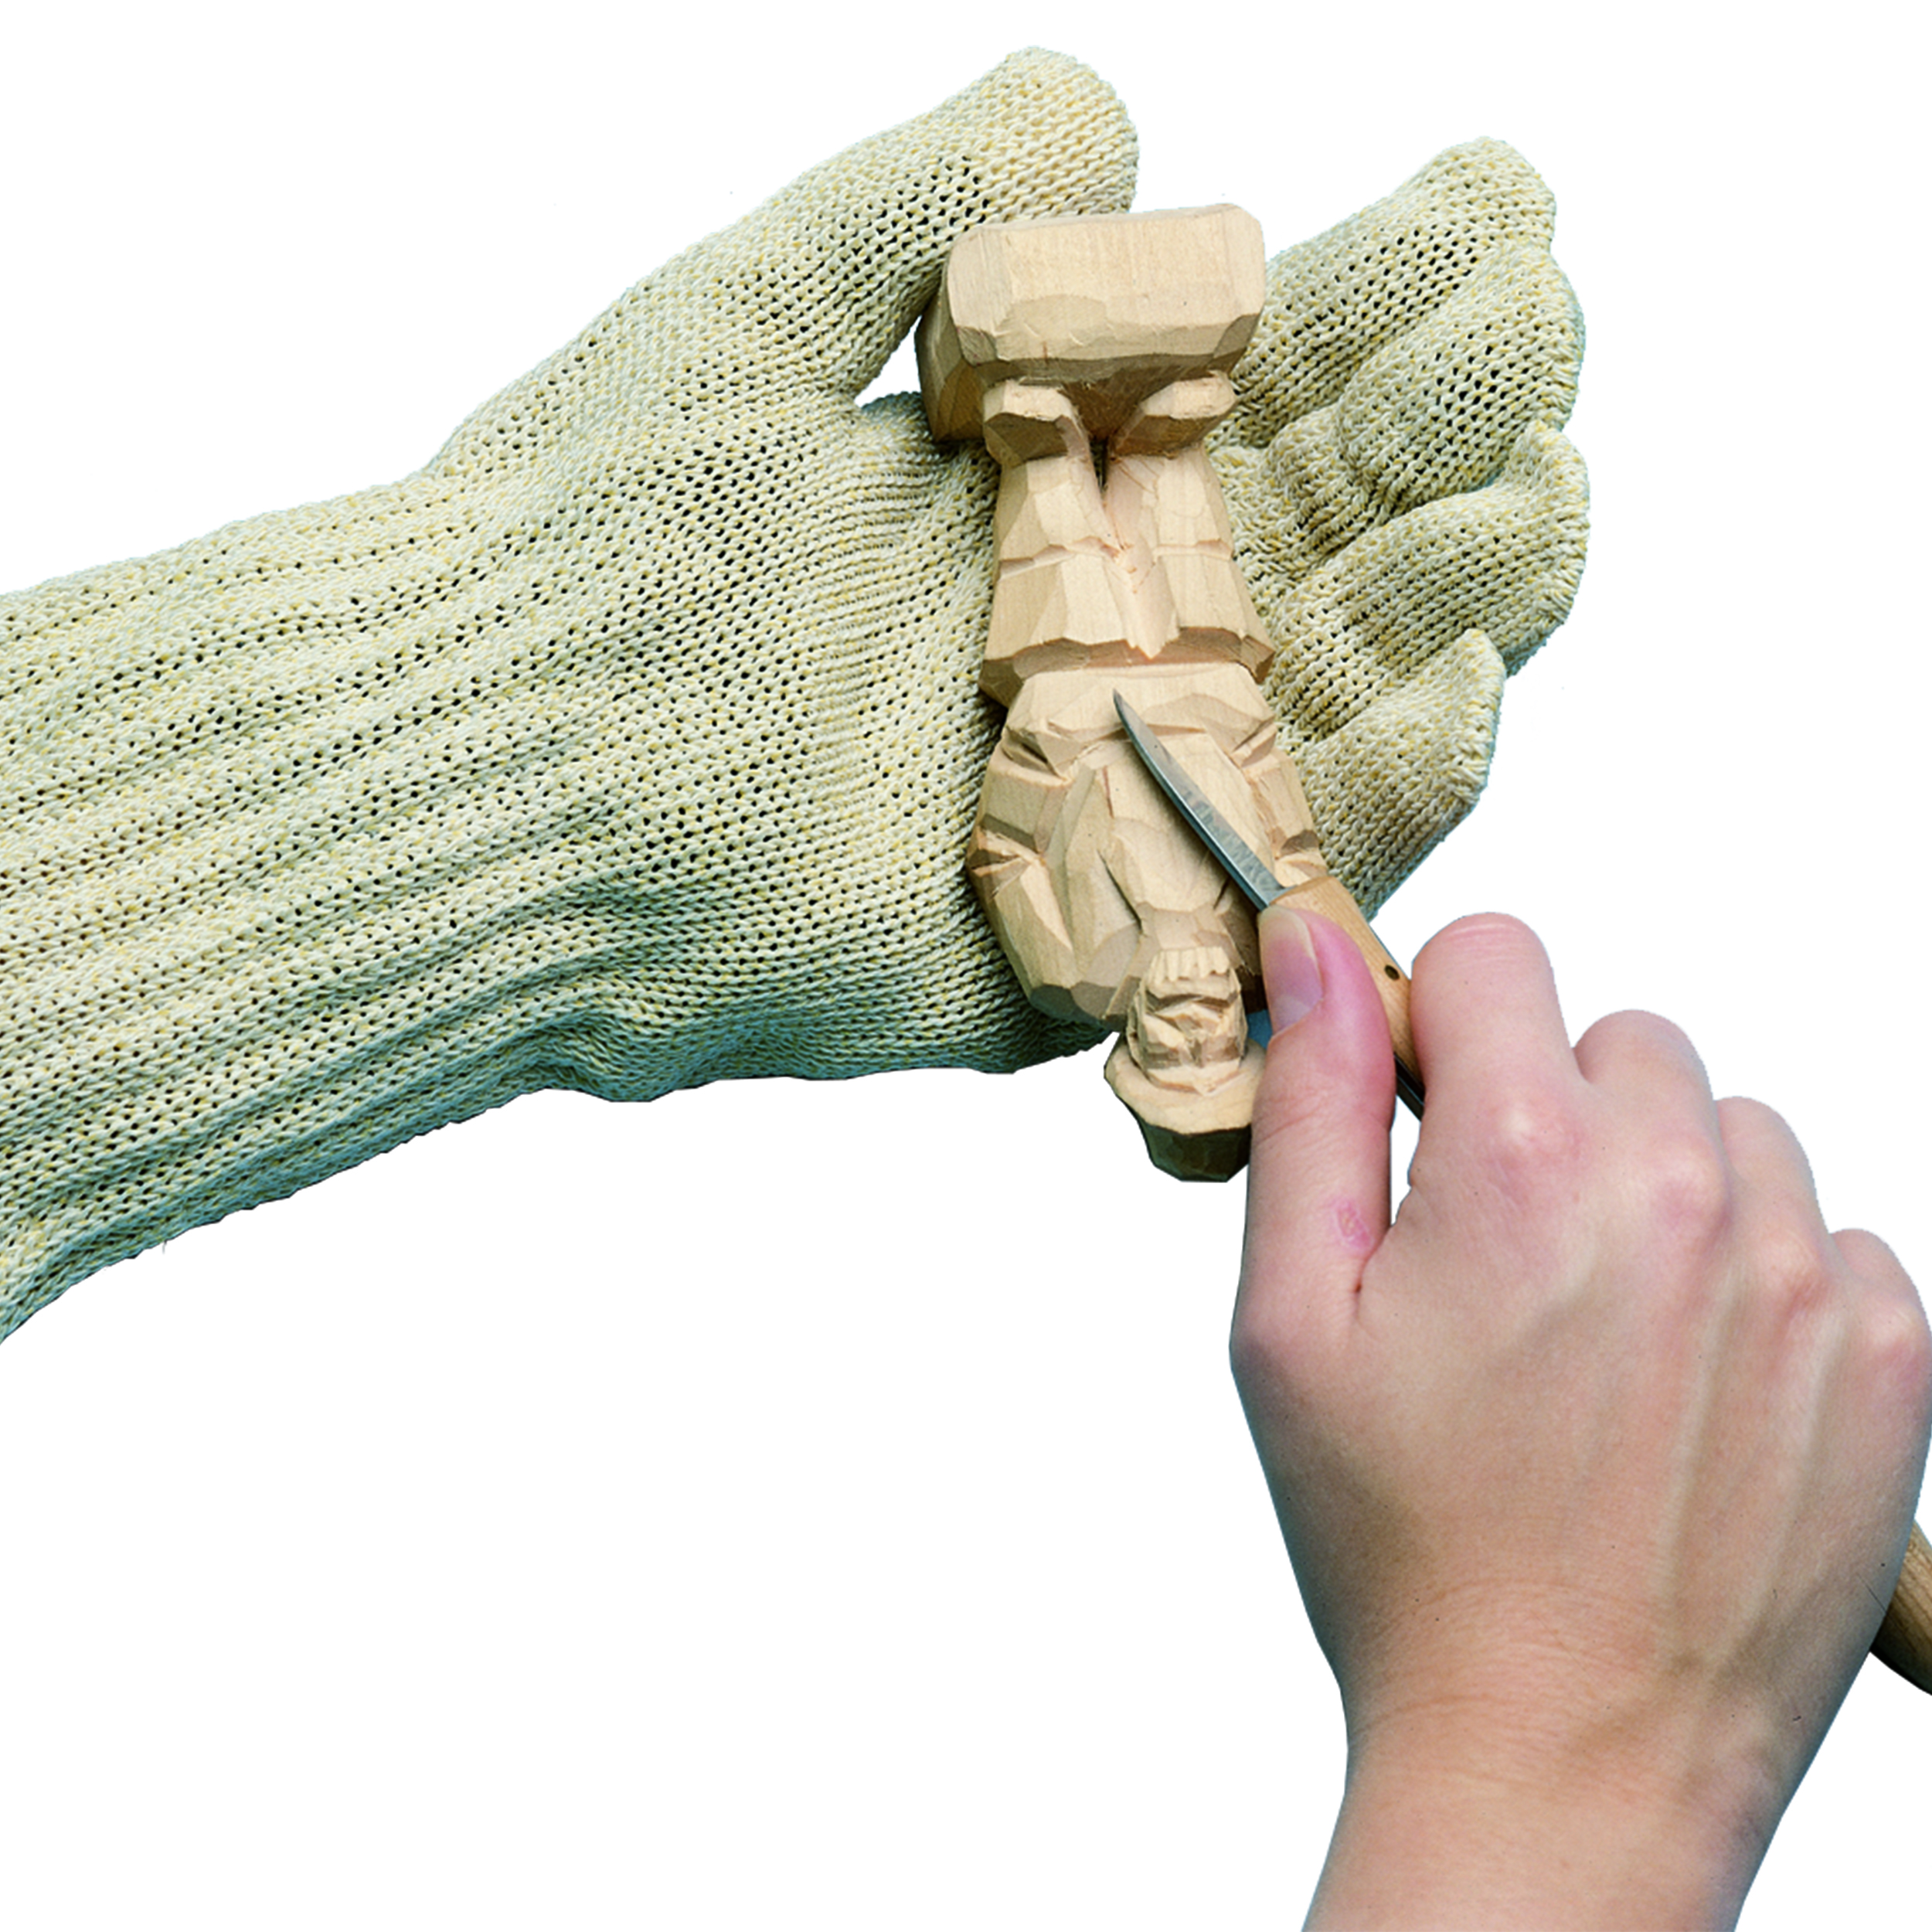 Safety Glove, Medium, Size 7-9